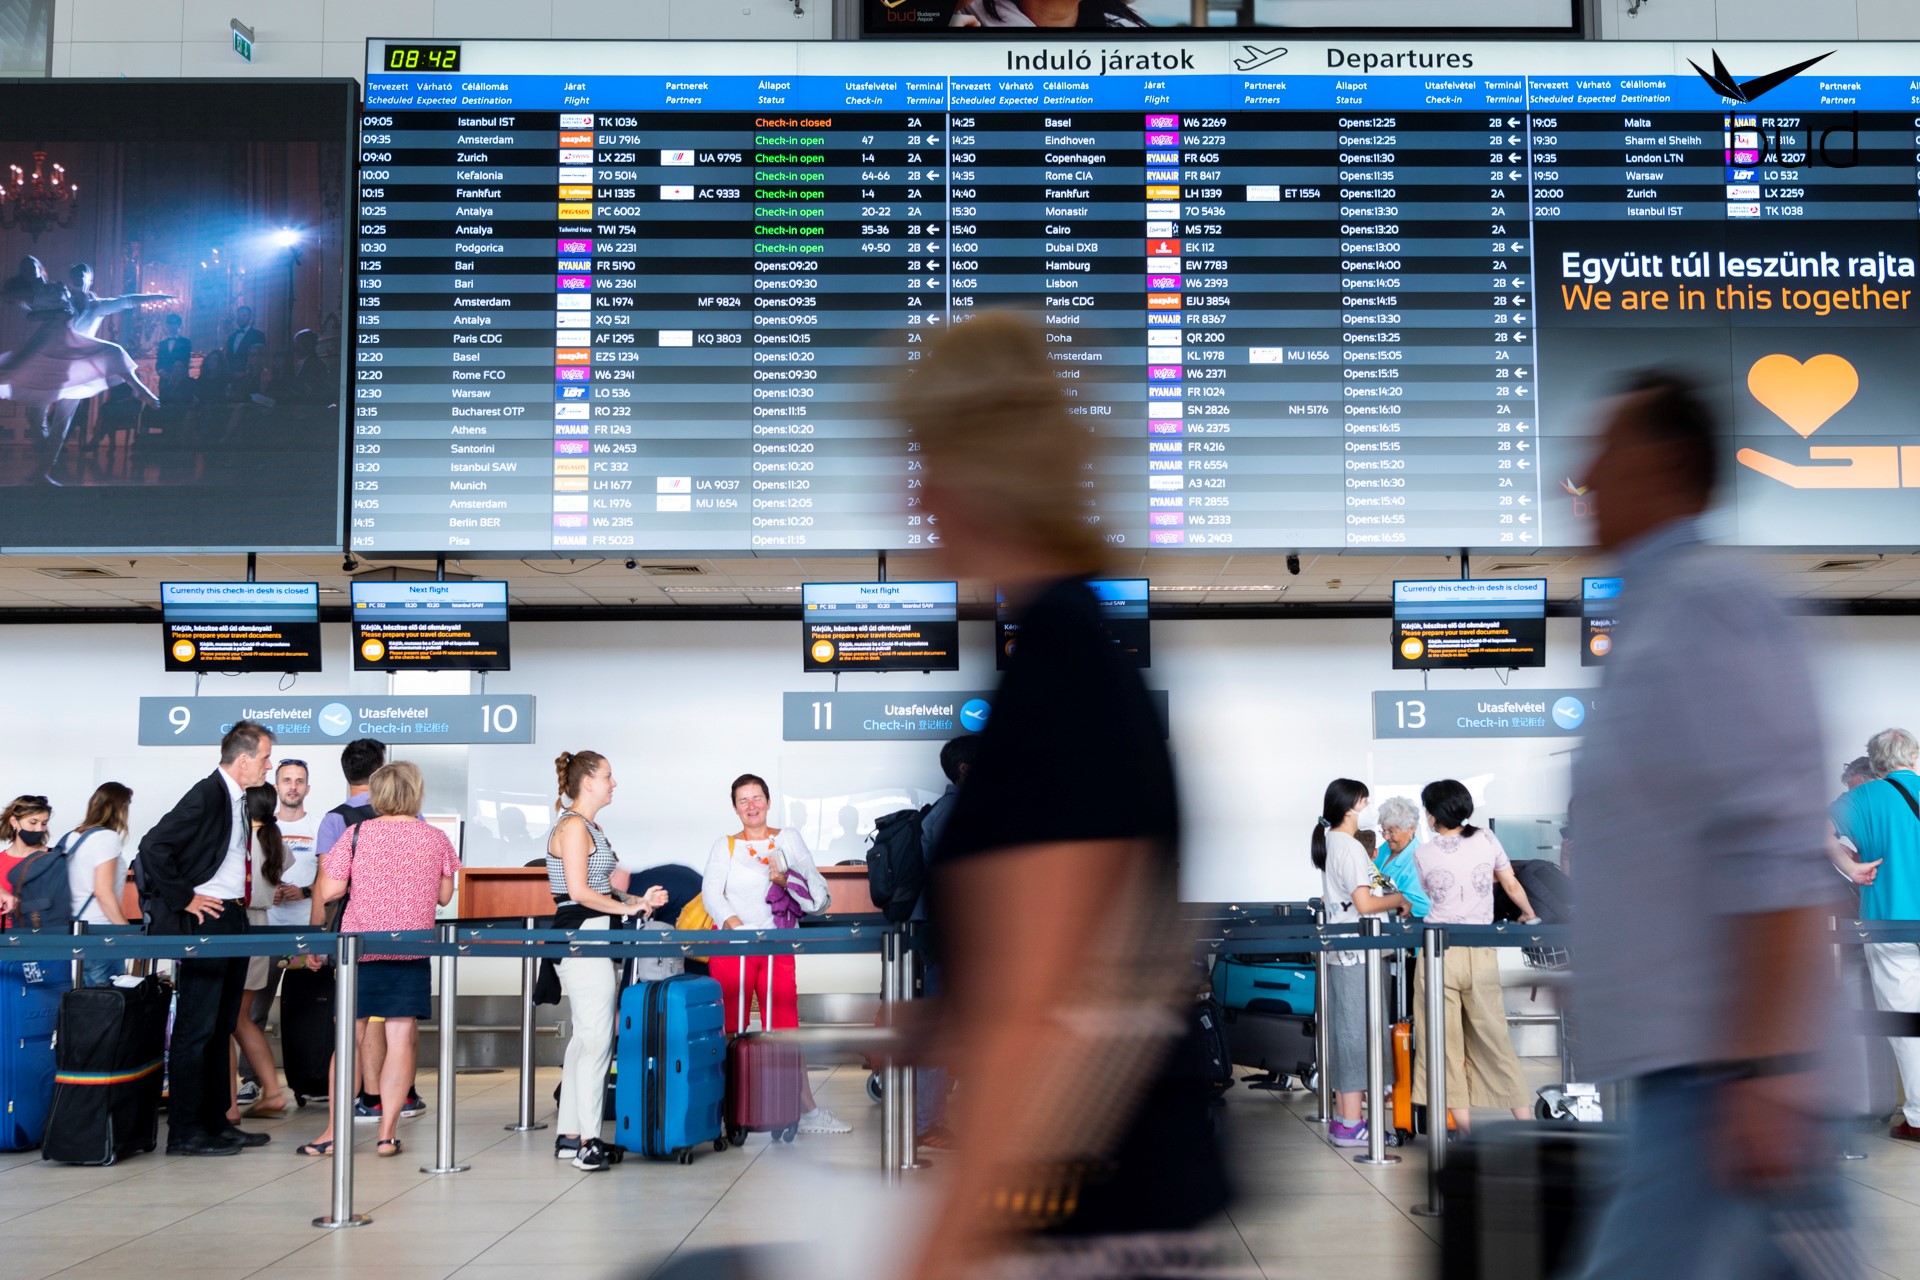 Utazási kisokos: mire készüljünk a budapesti repülőtéren? - Blikk